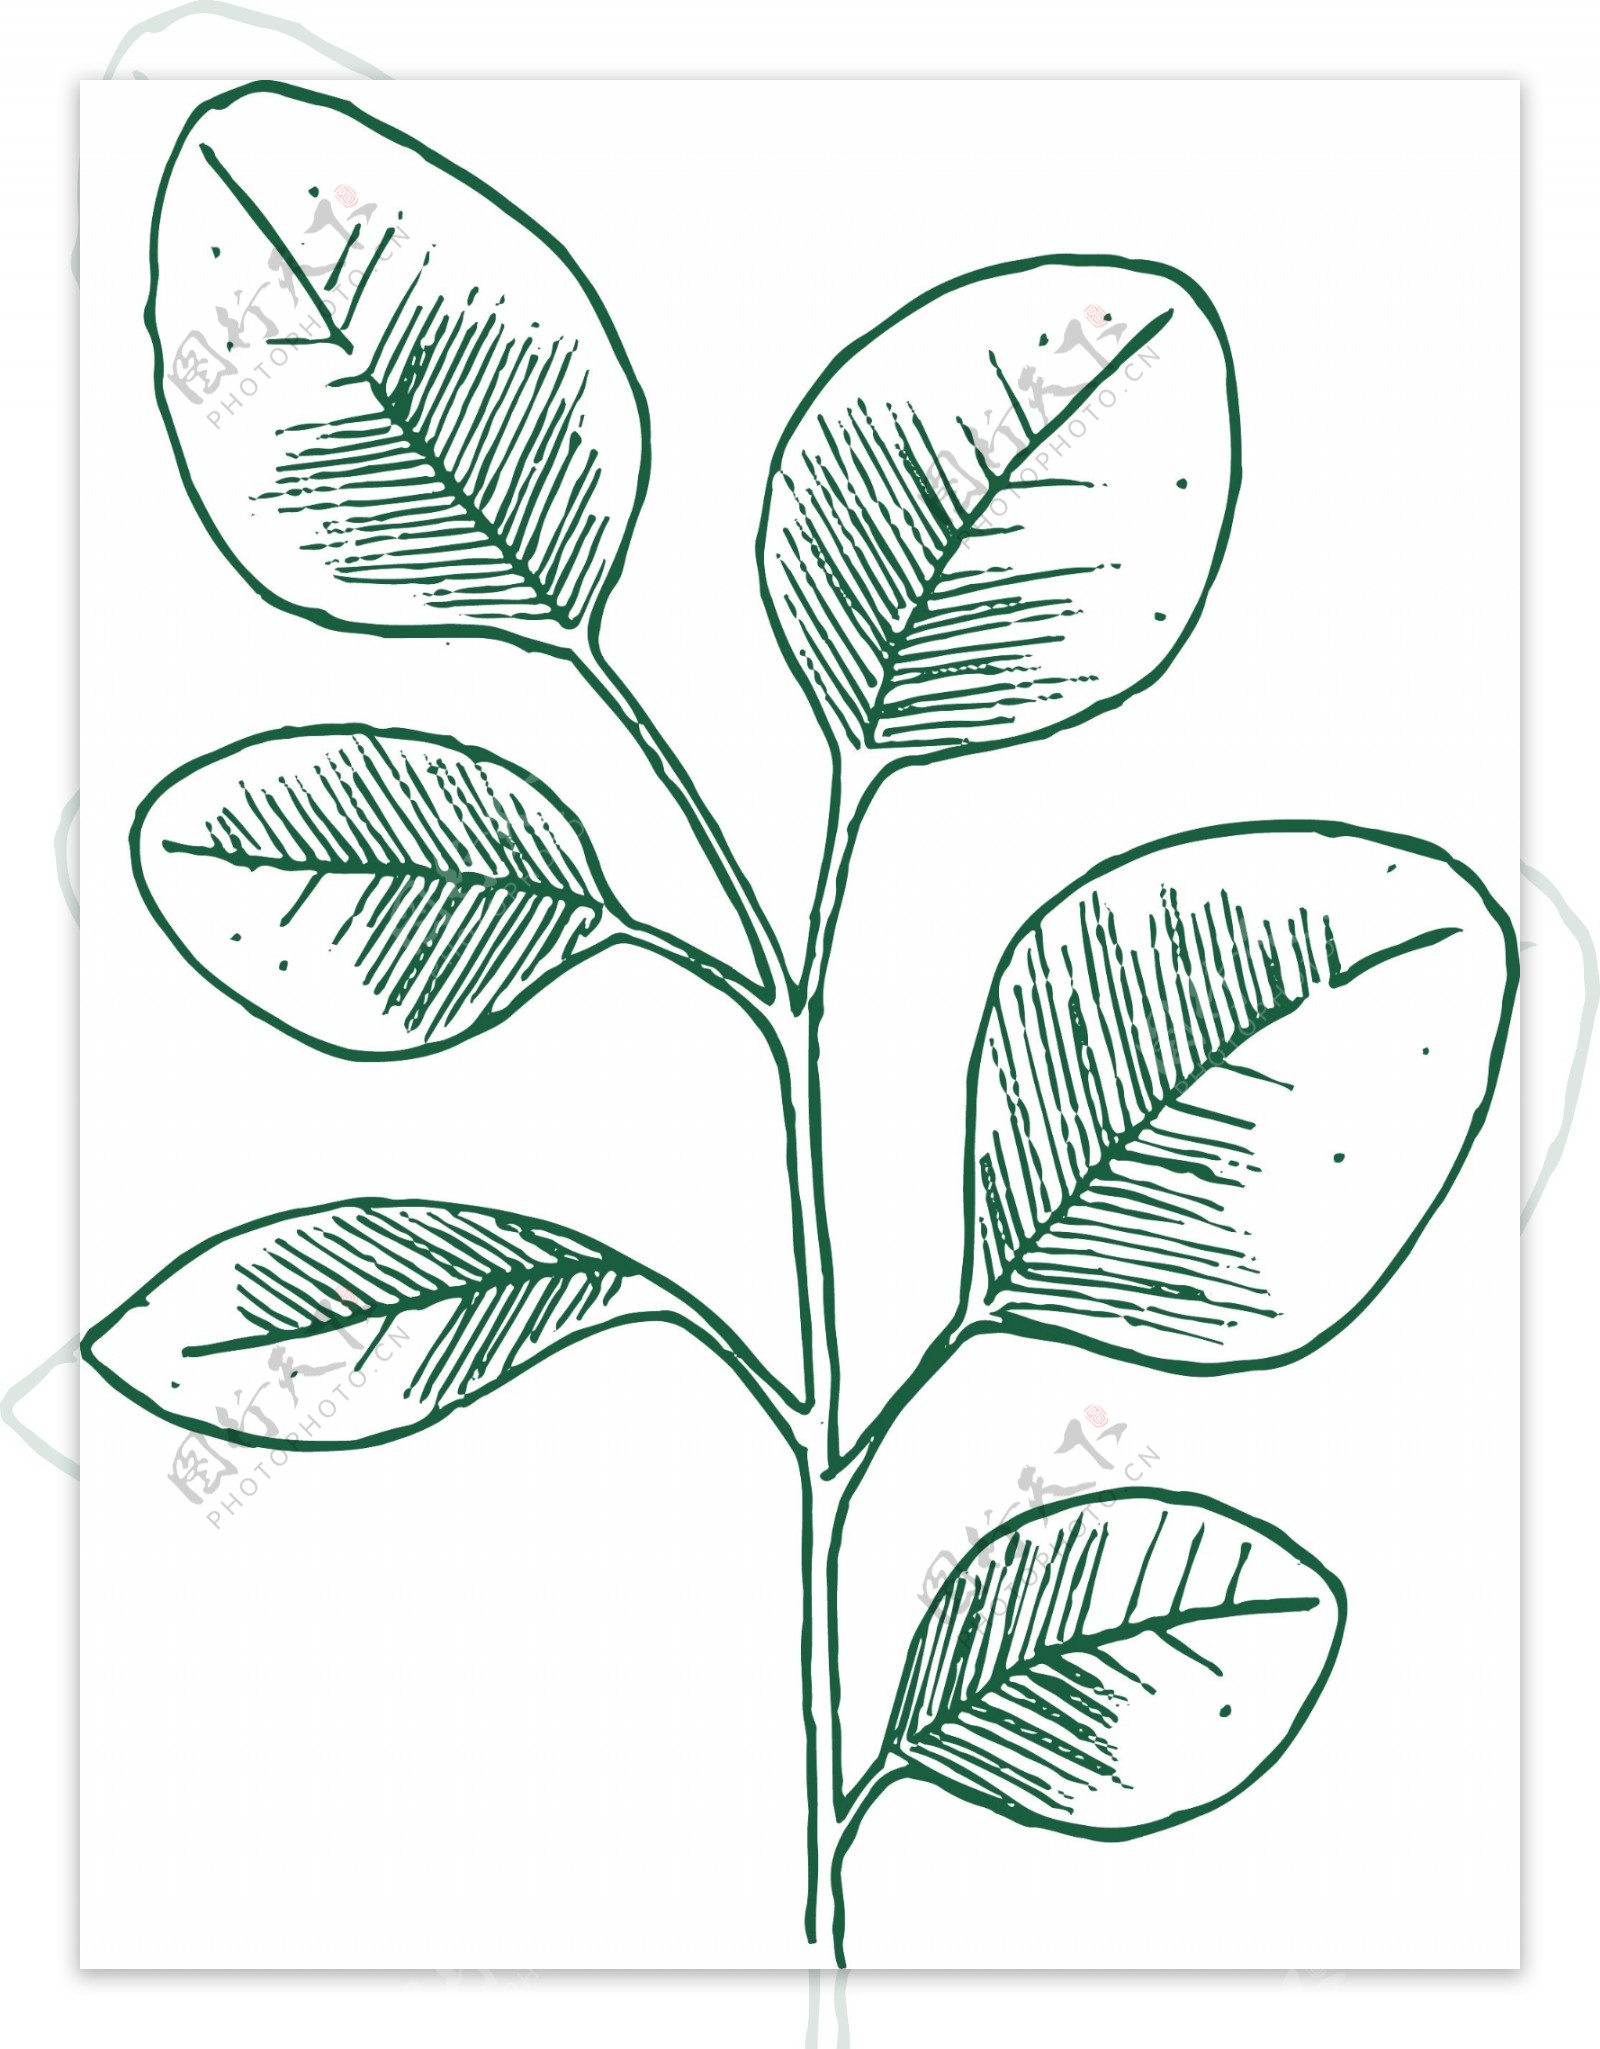 绿色植物线描